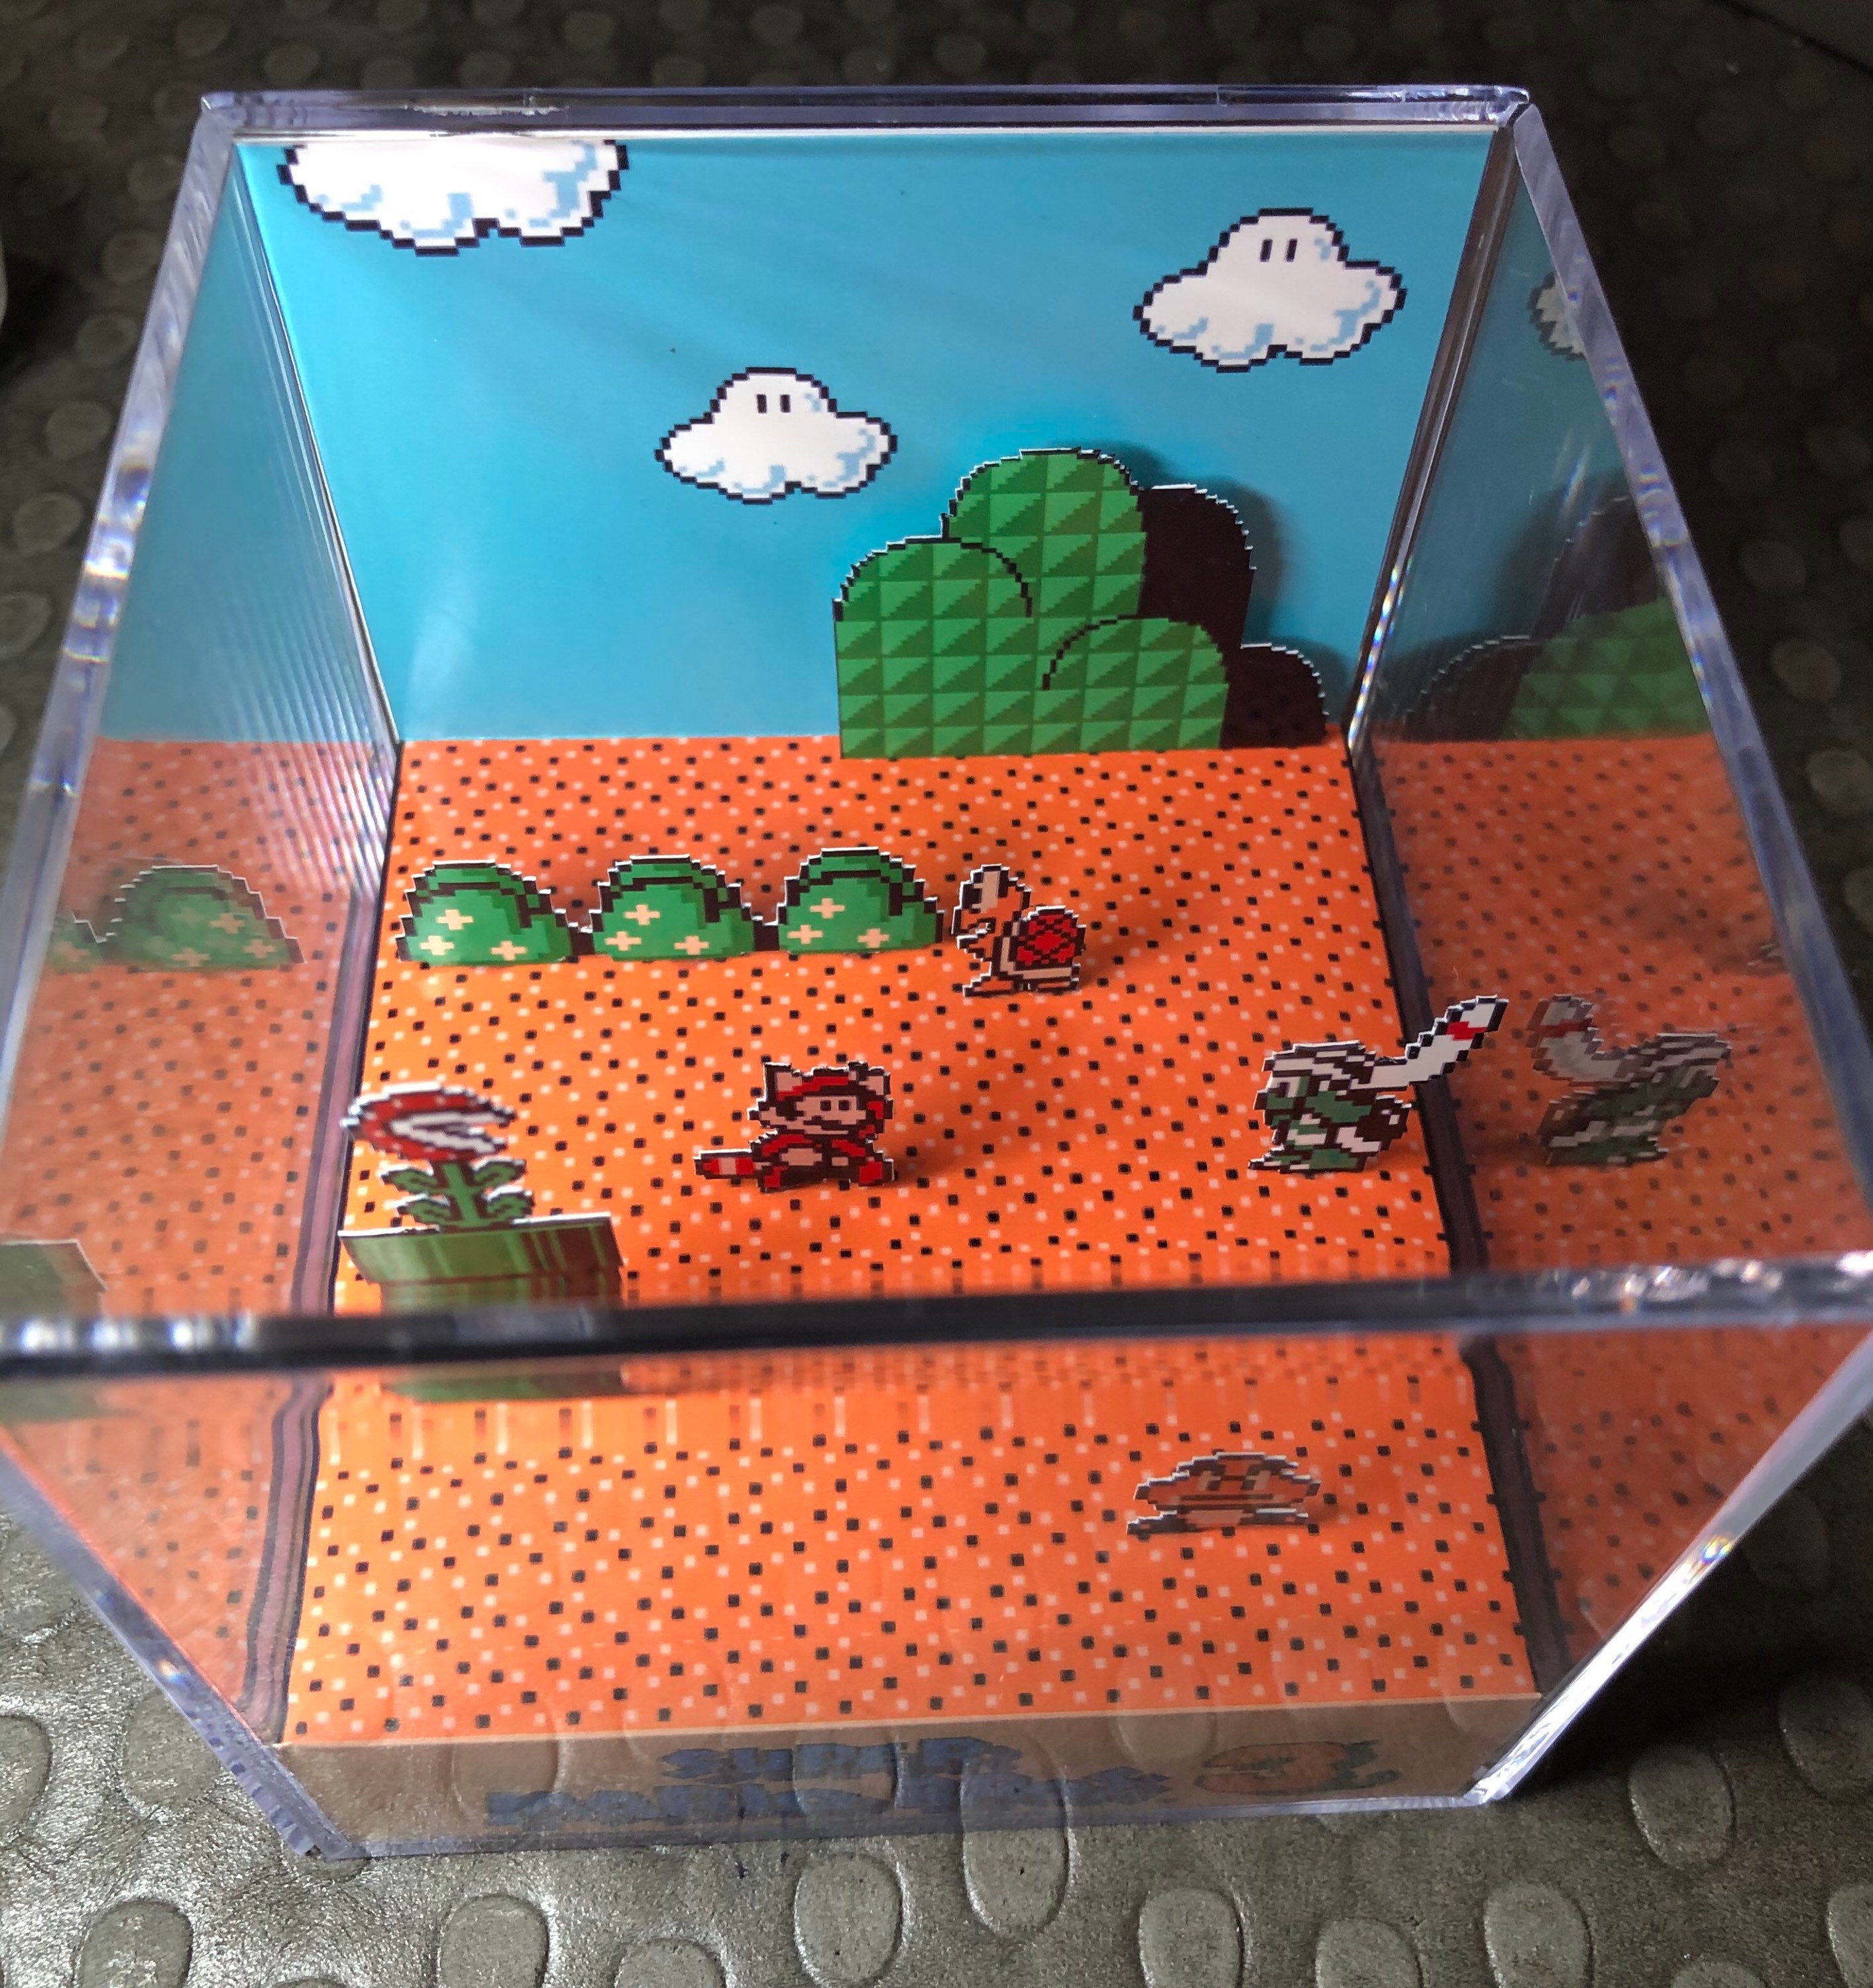 Super Mario Bros 3 Nintendo NES 3D Cube Handmade Diorama Shadowbox